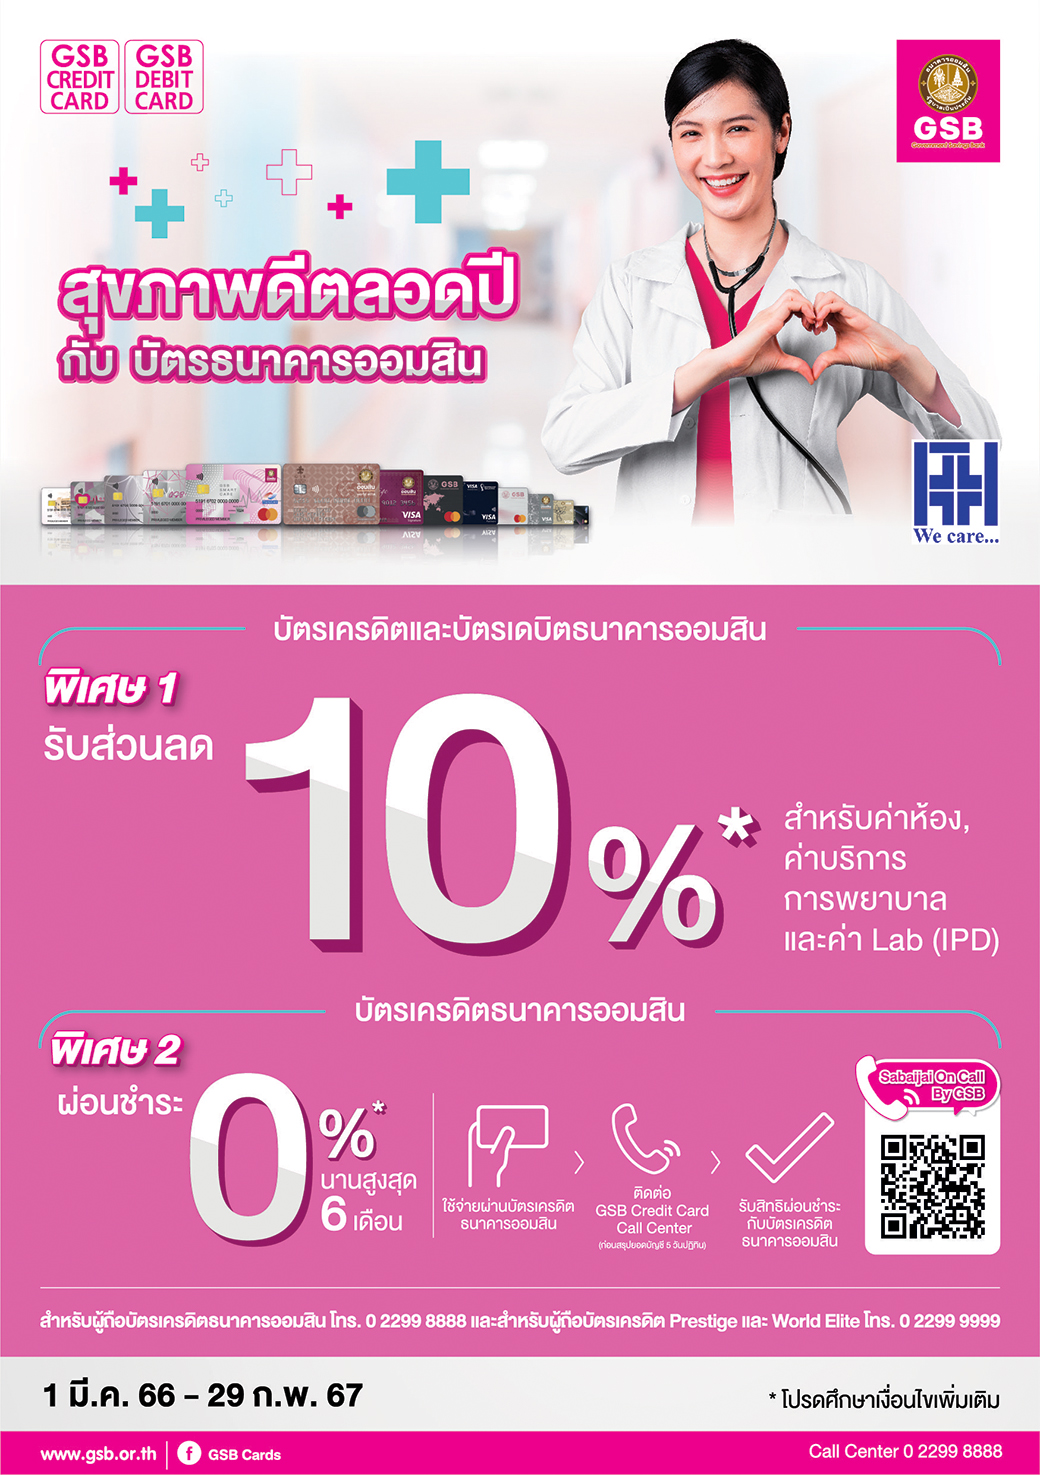 04 Gsb Hospital A5 Pattaya International Hospital